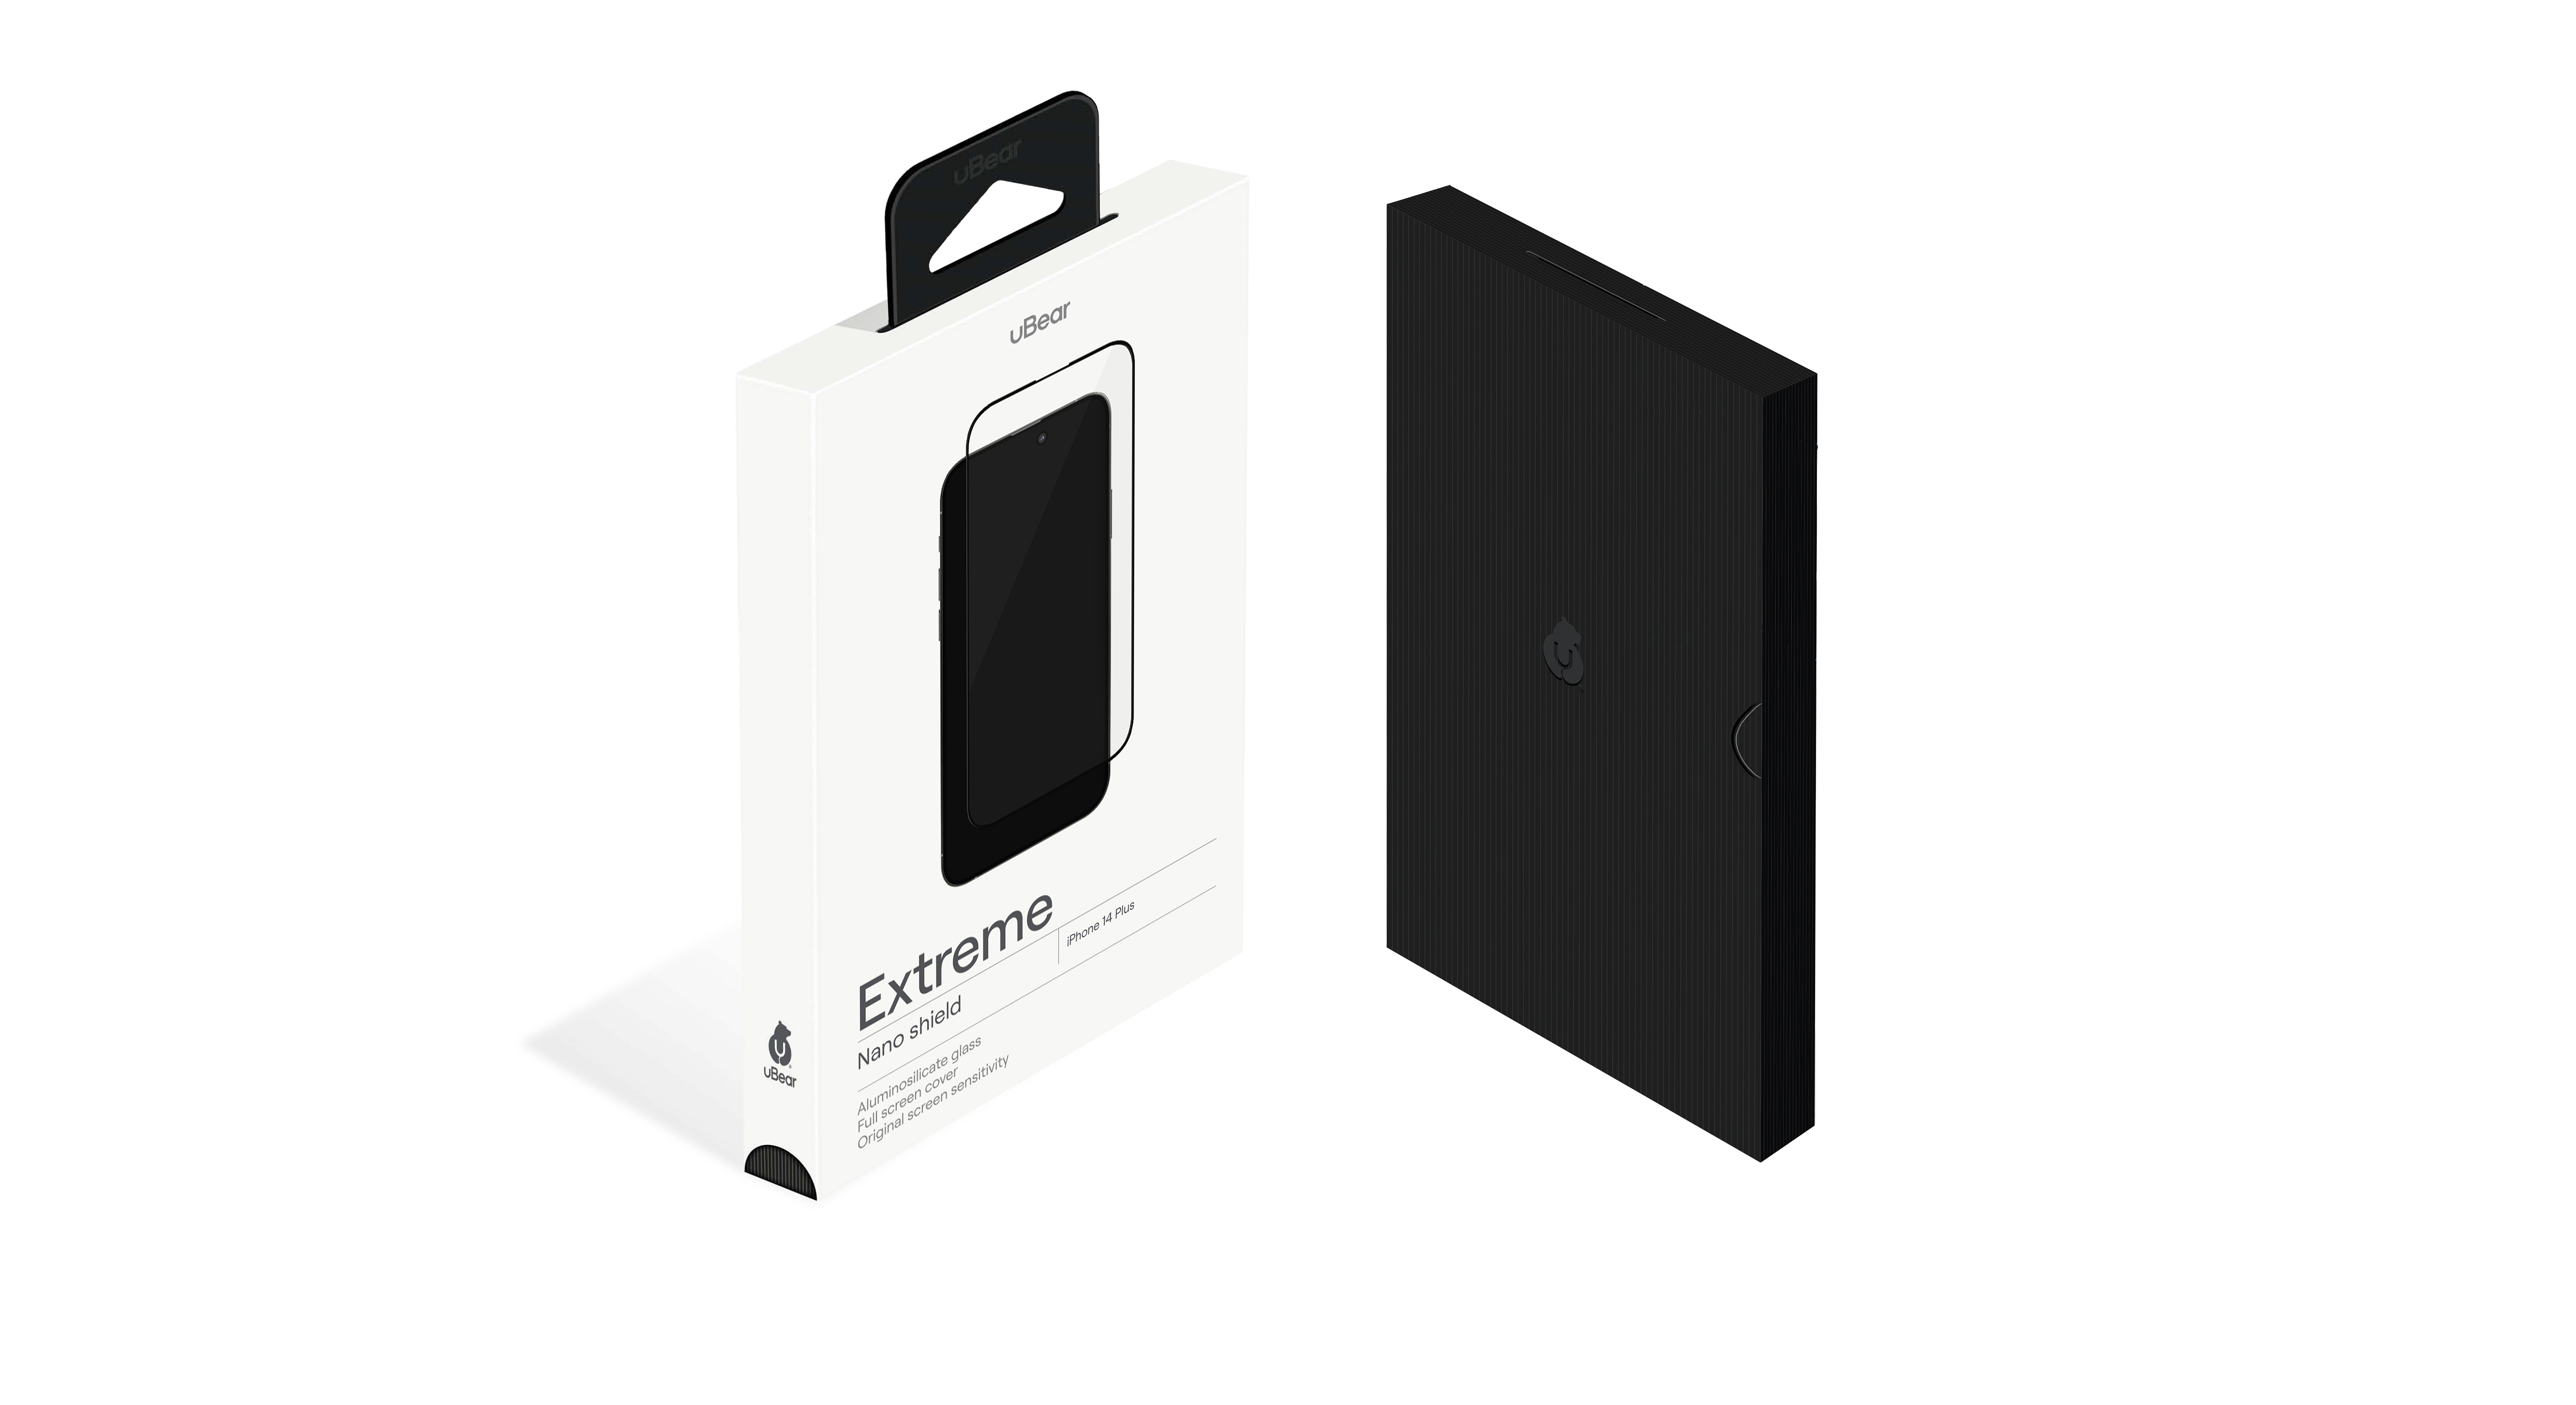 Стекло защитное  uBear Extreme Nano Shield для  iPhone 14 Max, алюмосиликатное, чёрный